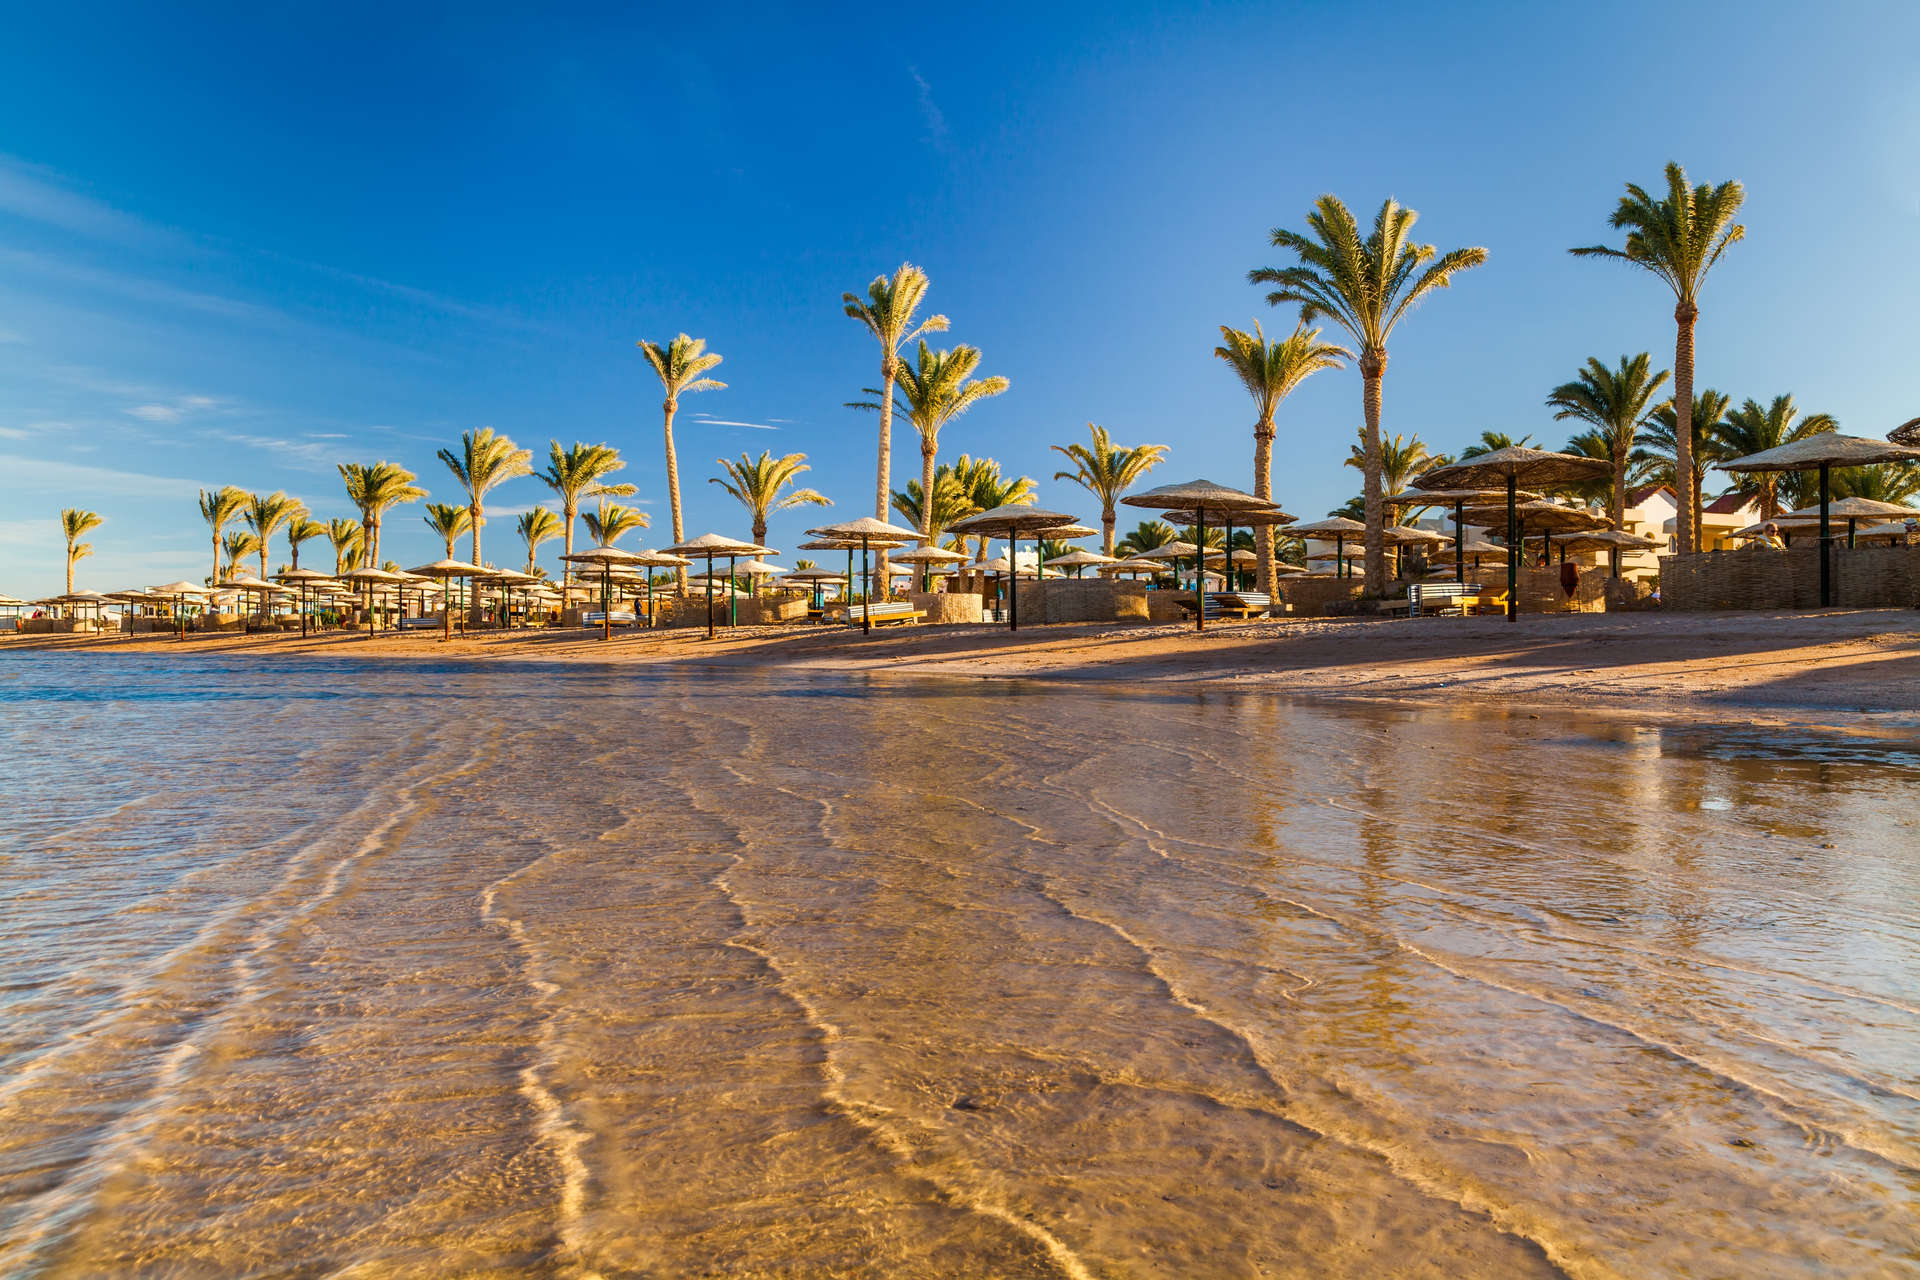 Ein palmengesäumter Strand in Ägypten